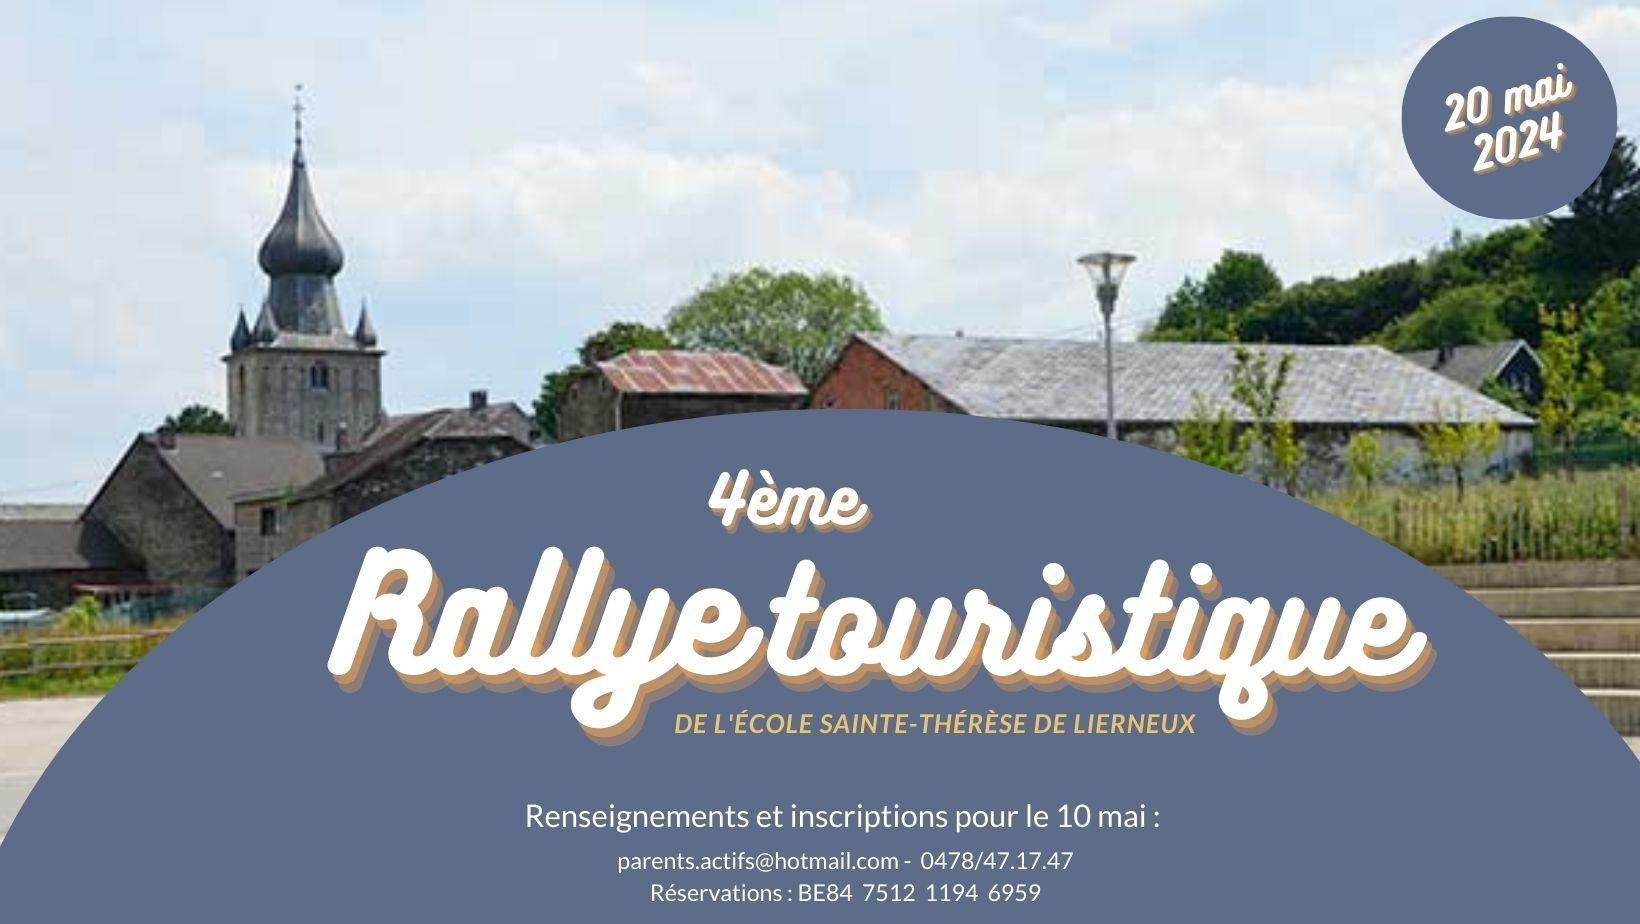 Rallye touristique à Lierneux